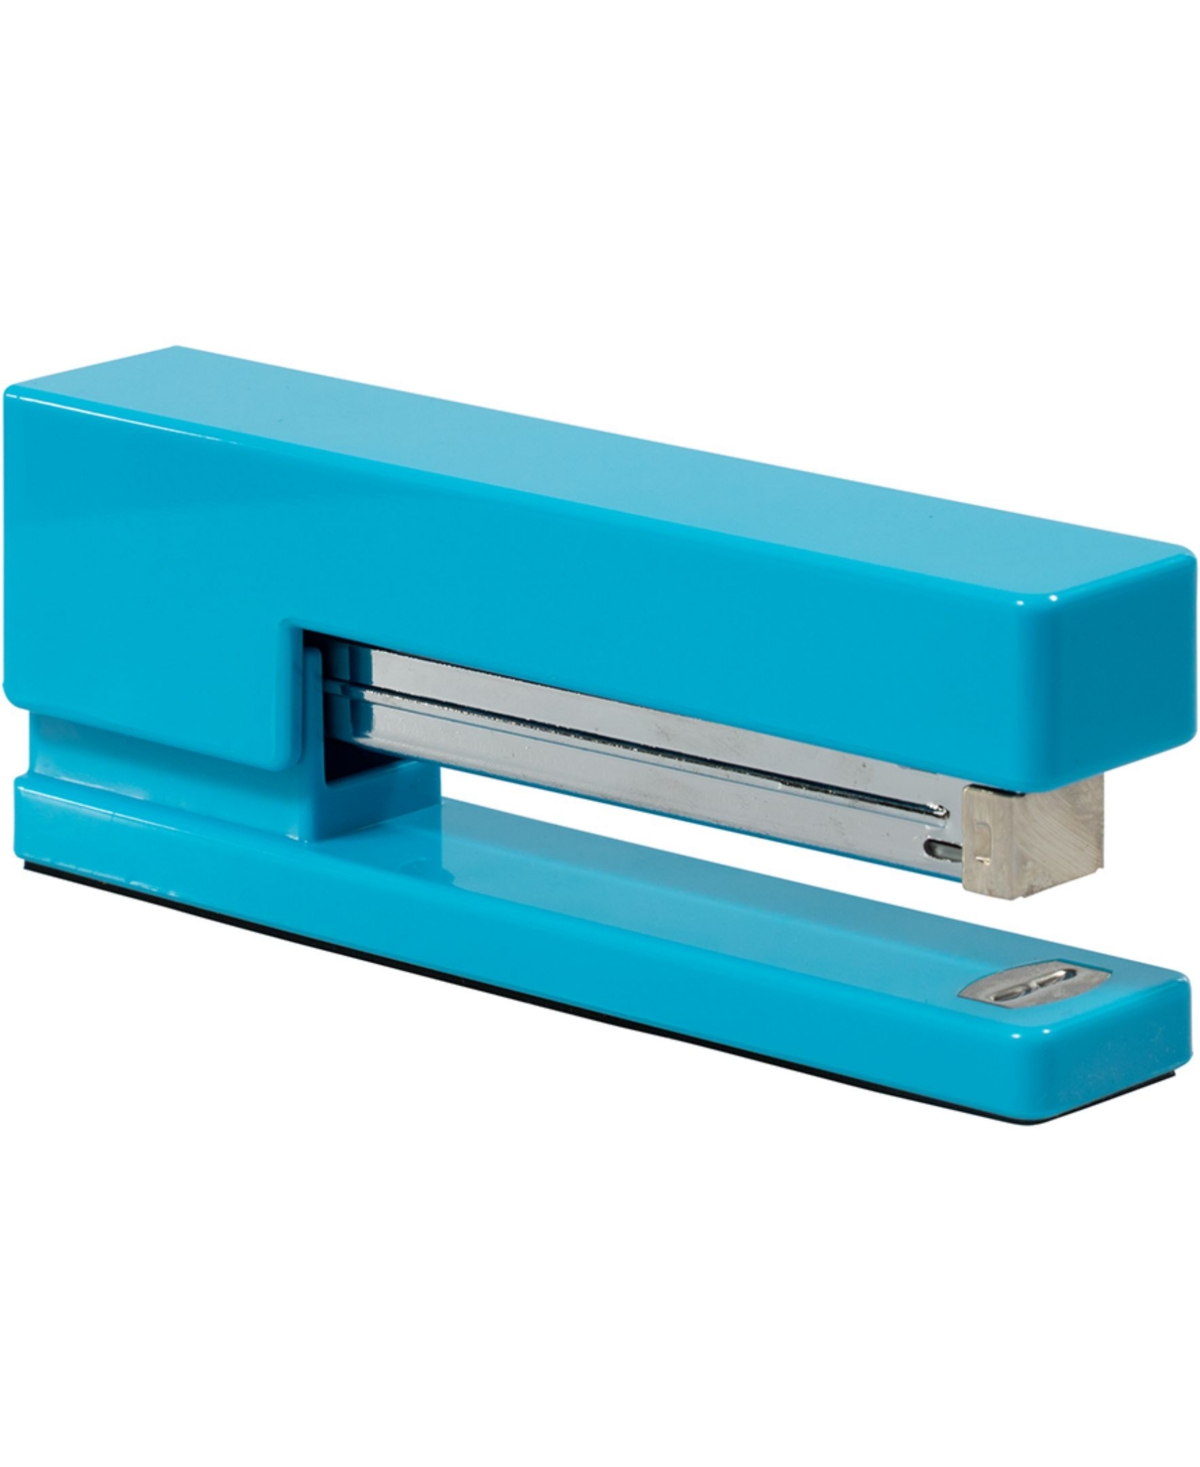 Jam Paper Modern Desk Stapler In Blue